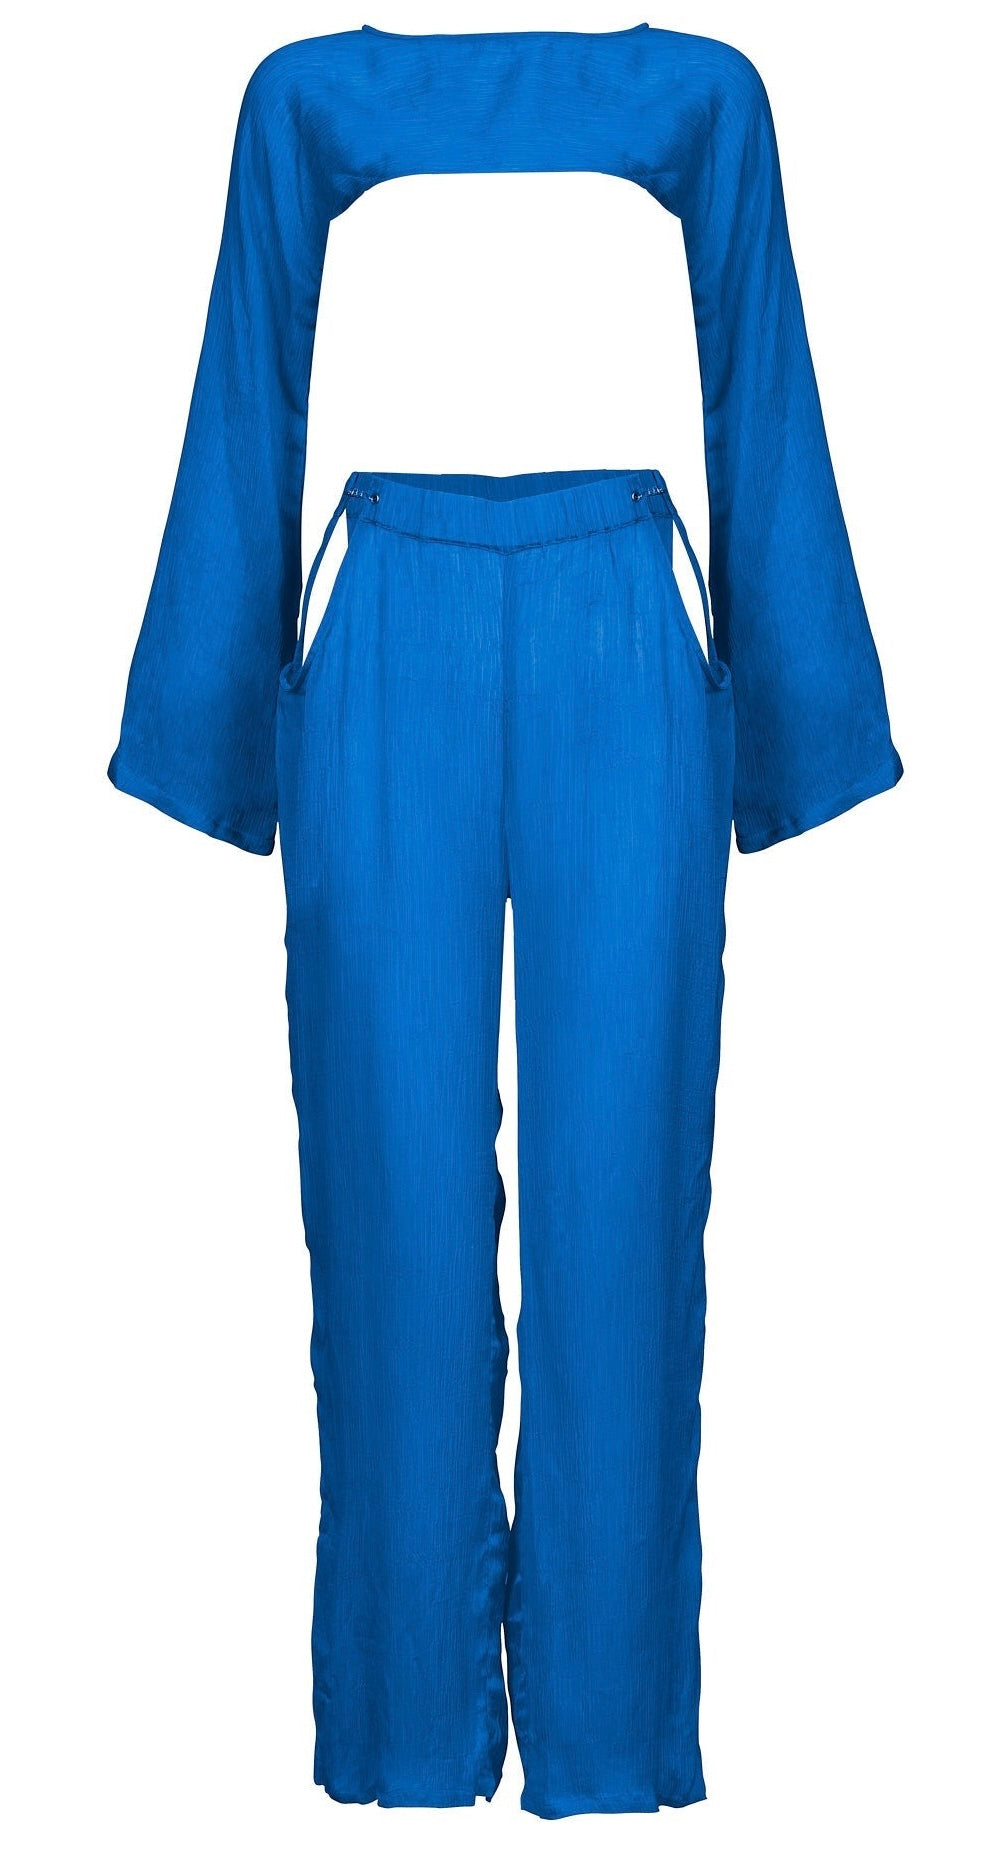 חליפת מיאמי צבע כחול -MIAMI SUIT COLOR BLUE